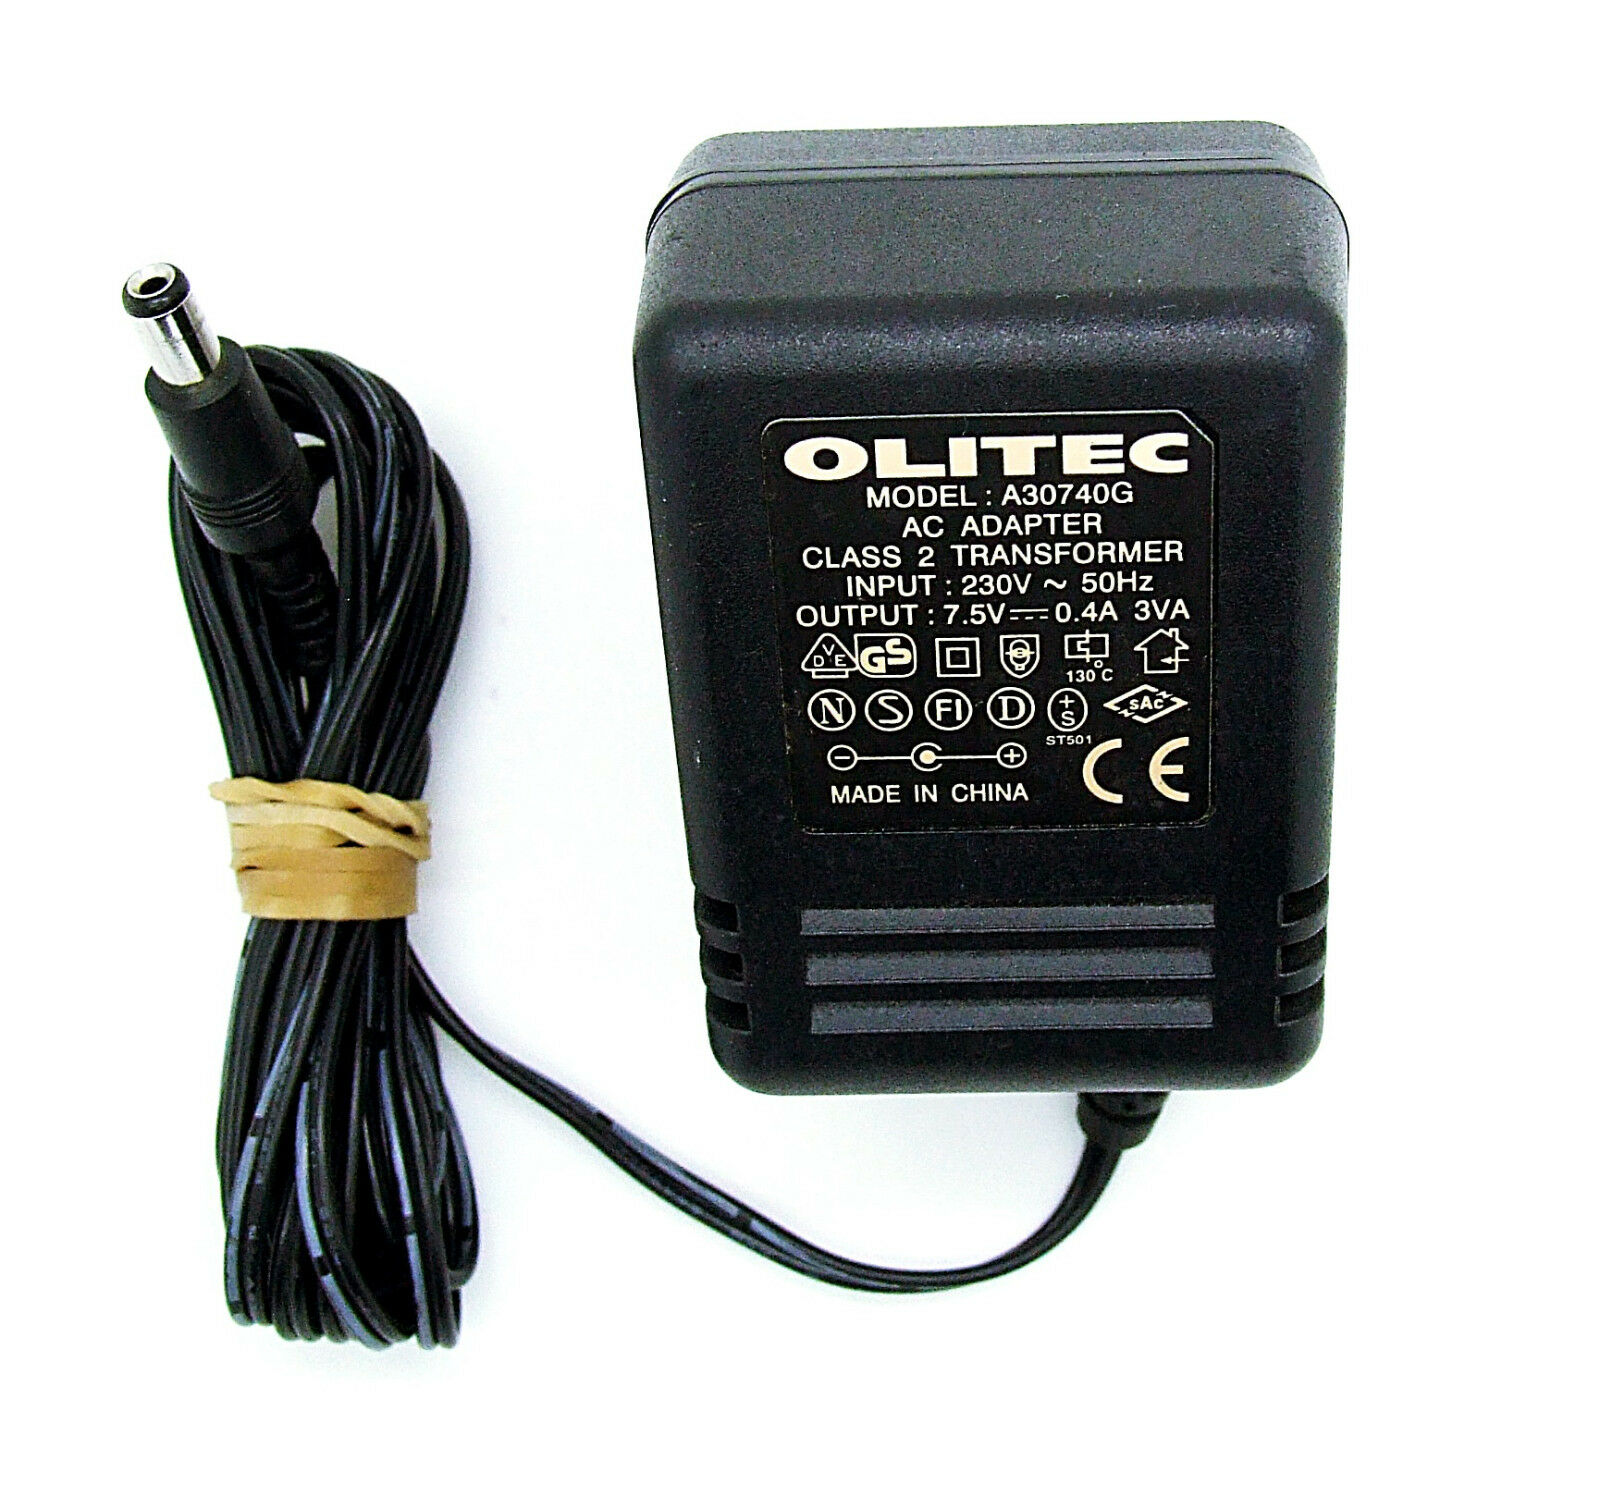 Original Olitec Power Supply a30740g AC Adapter 7,5v 0,4a Artikelbeschreibung Original Olitec Netzteil A30740G AC Ada